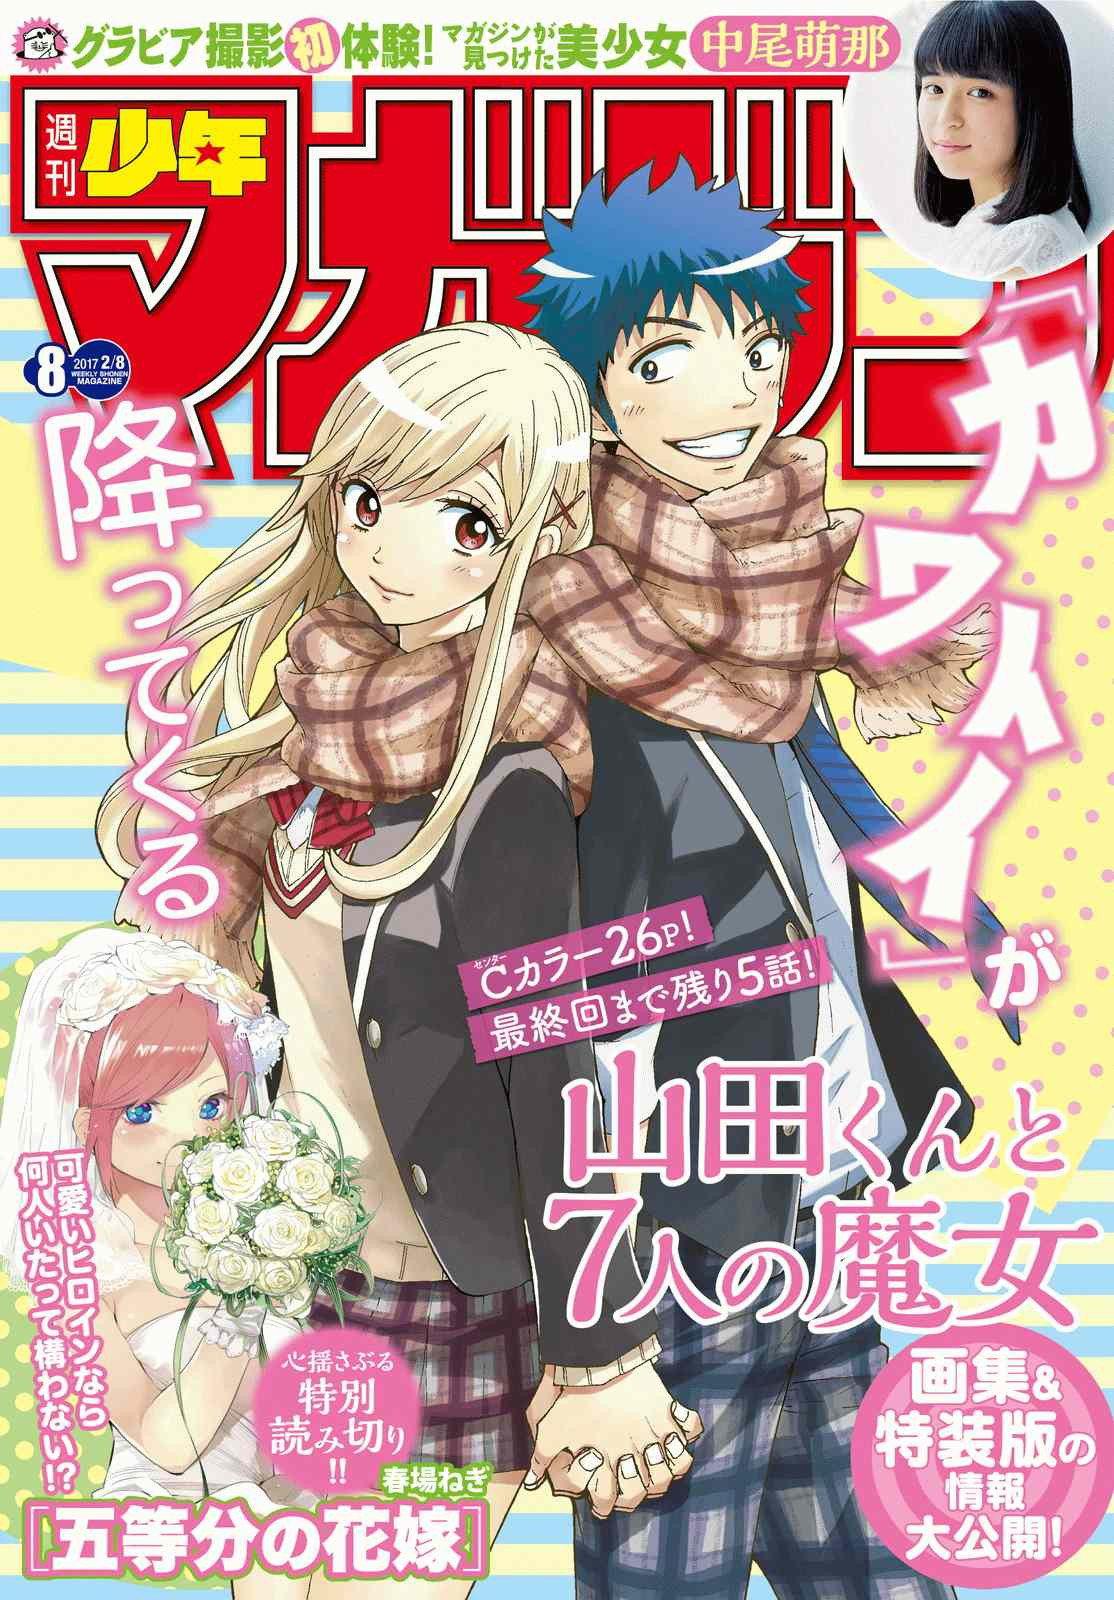 Yamada Kun To 7 Nin No Majo Chapter 239 Page 1 Raw Manga 生漫画